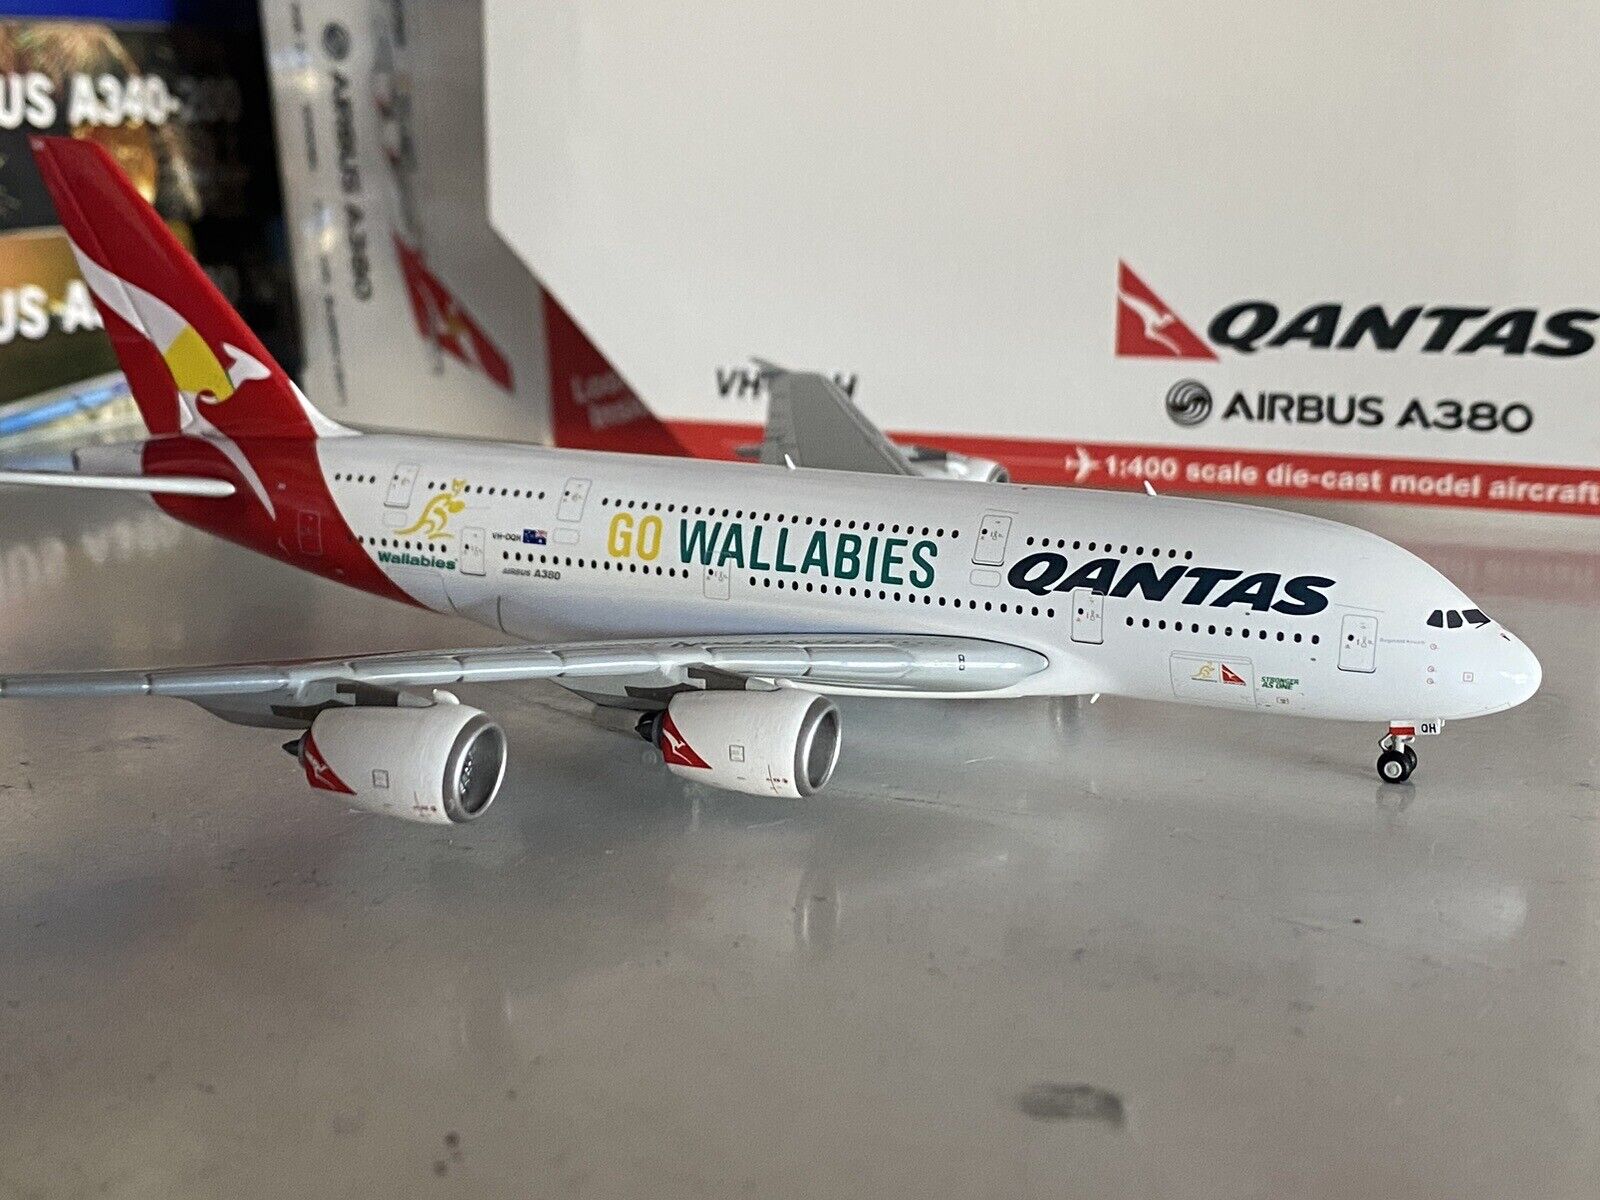 Gemini Jets Qantas Airways Airbus A380-800 1:400 VH-OQH GJQFA1541 Go Wallabies